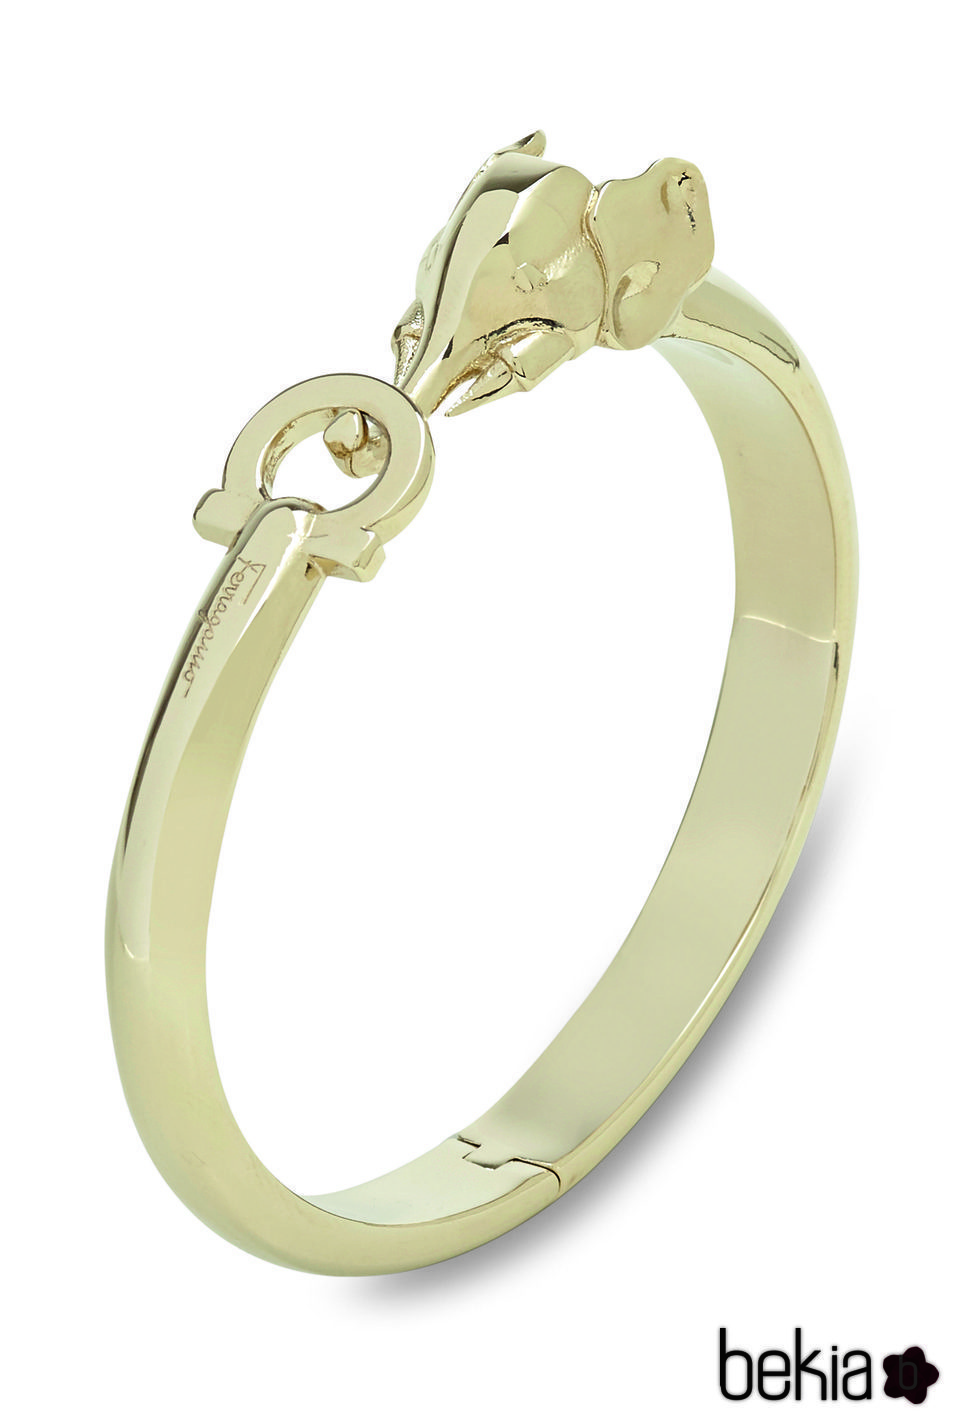 pulsera dorada con broche de elefante de los complementos de la colección otoño 2016 de Salvatore Ferragamo